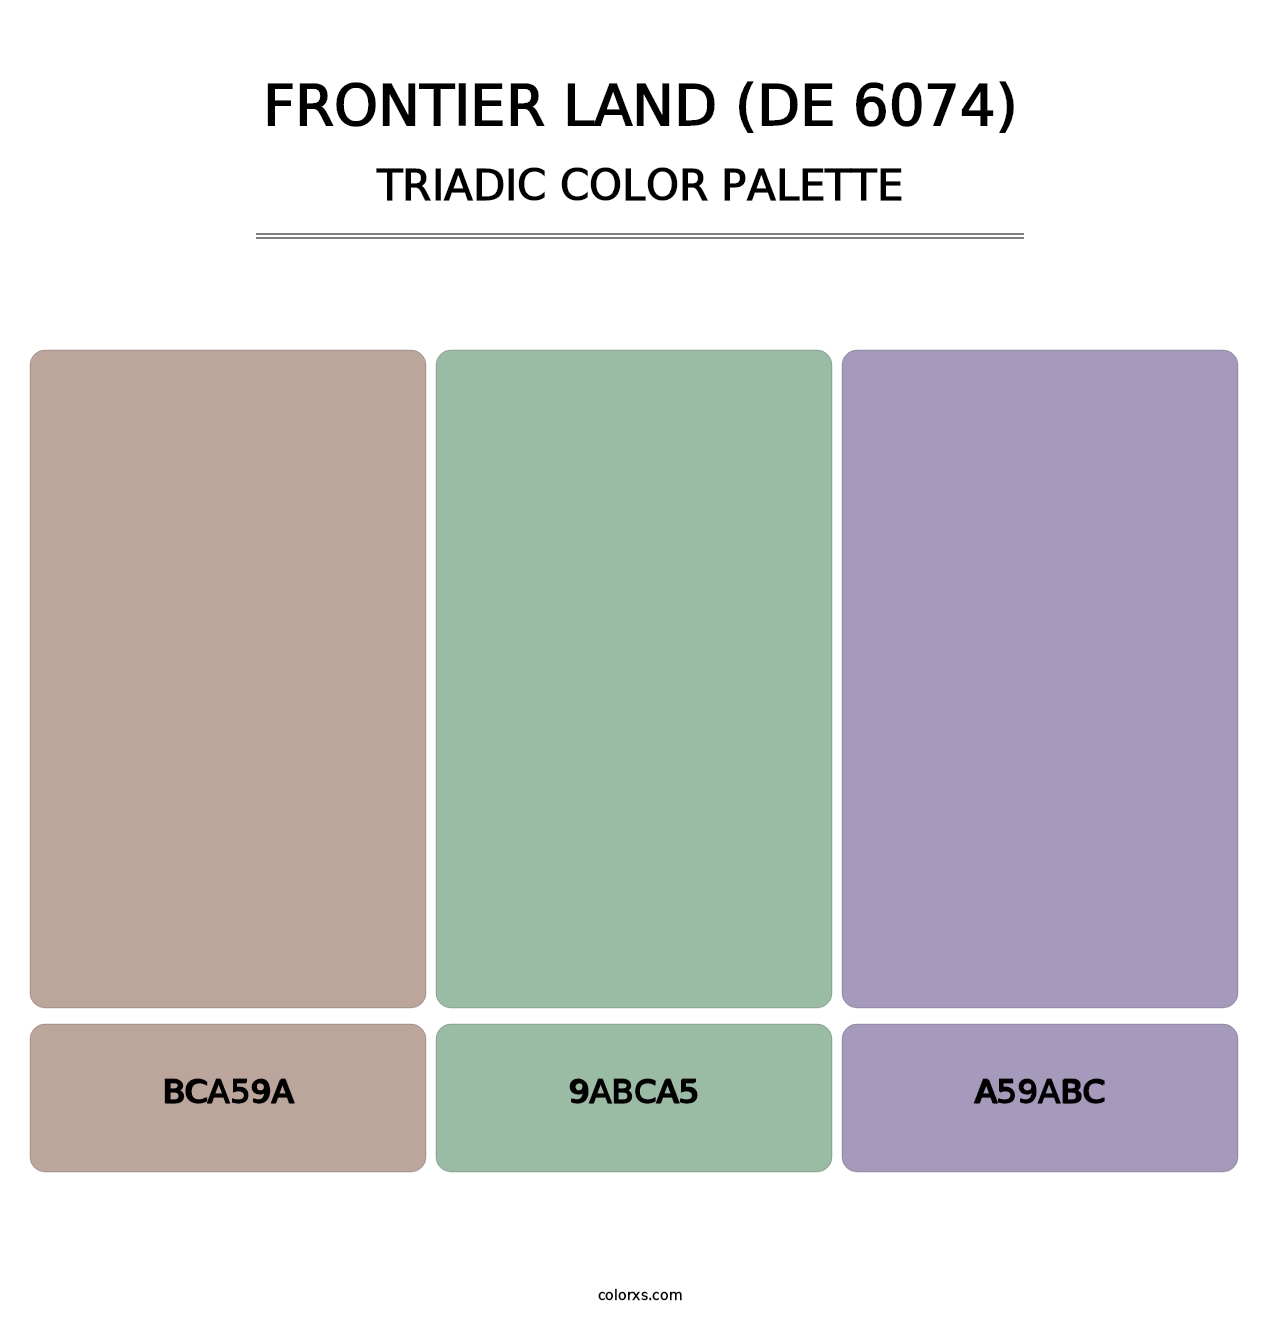 Frontier Land (DE 6074) - Triadic Color Palette